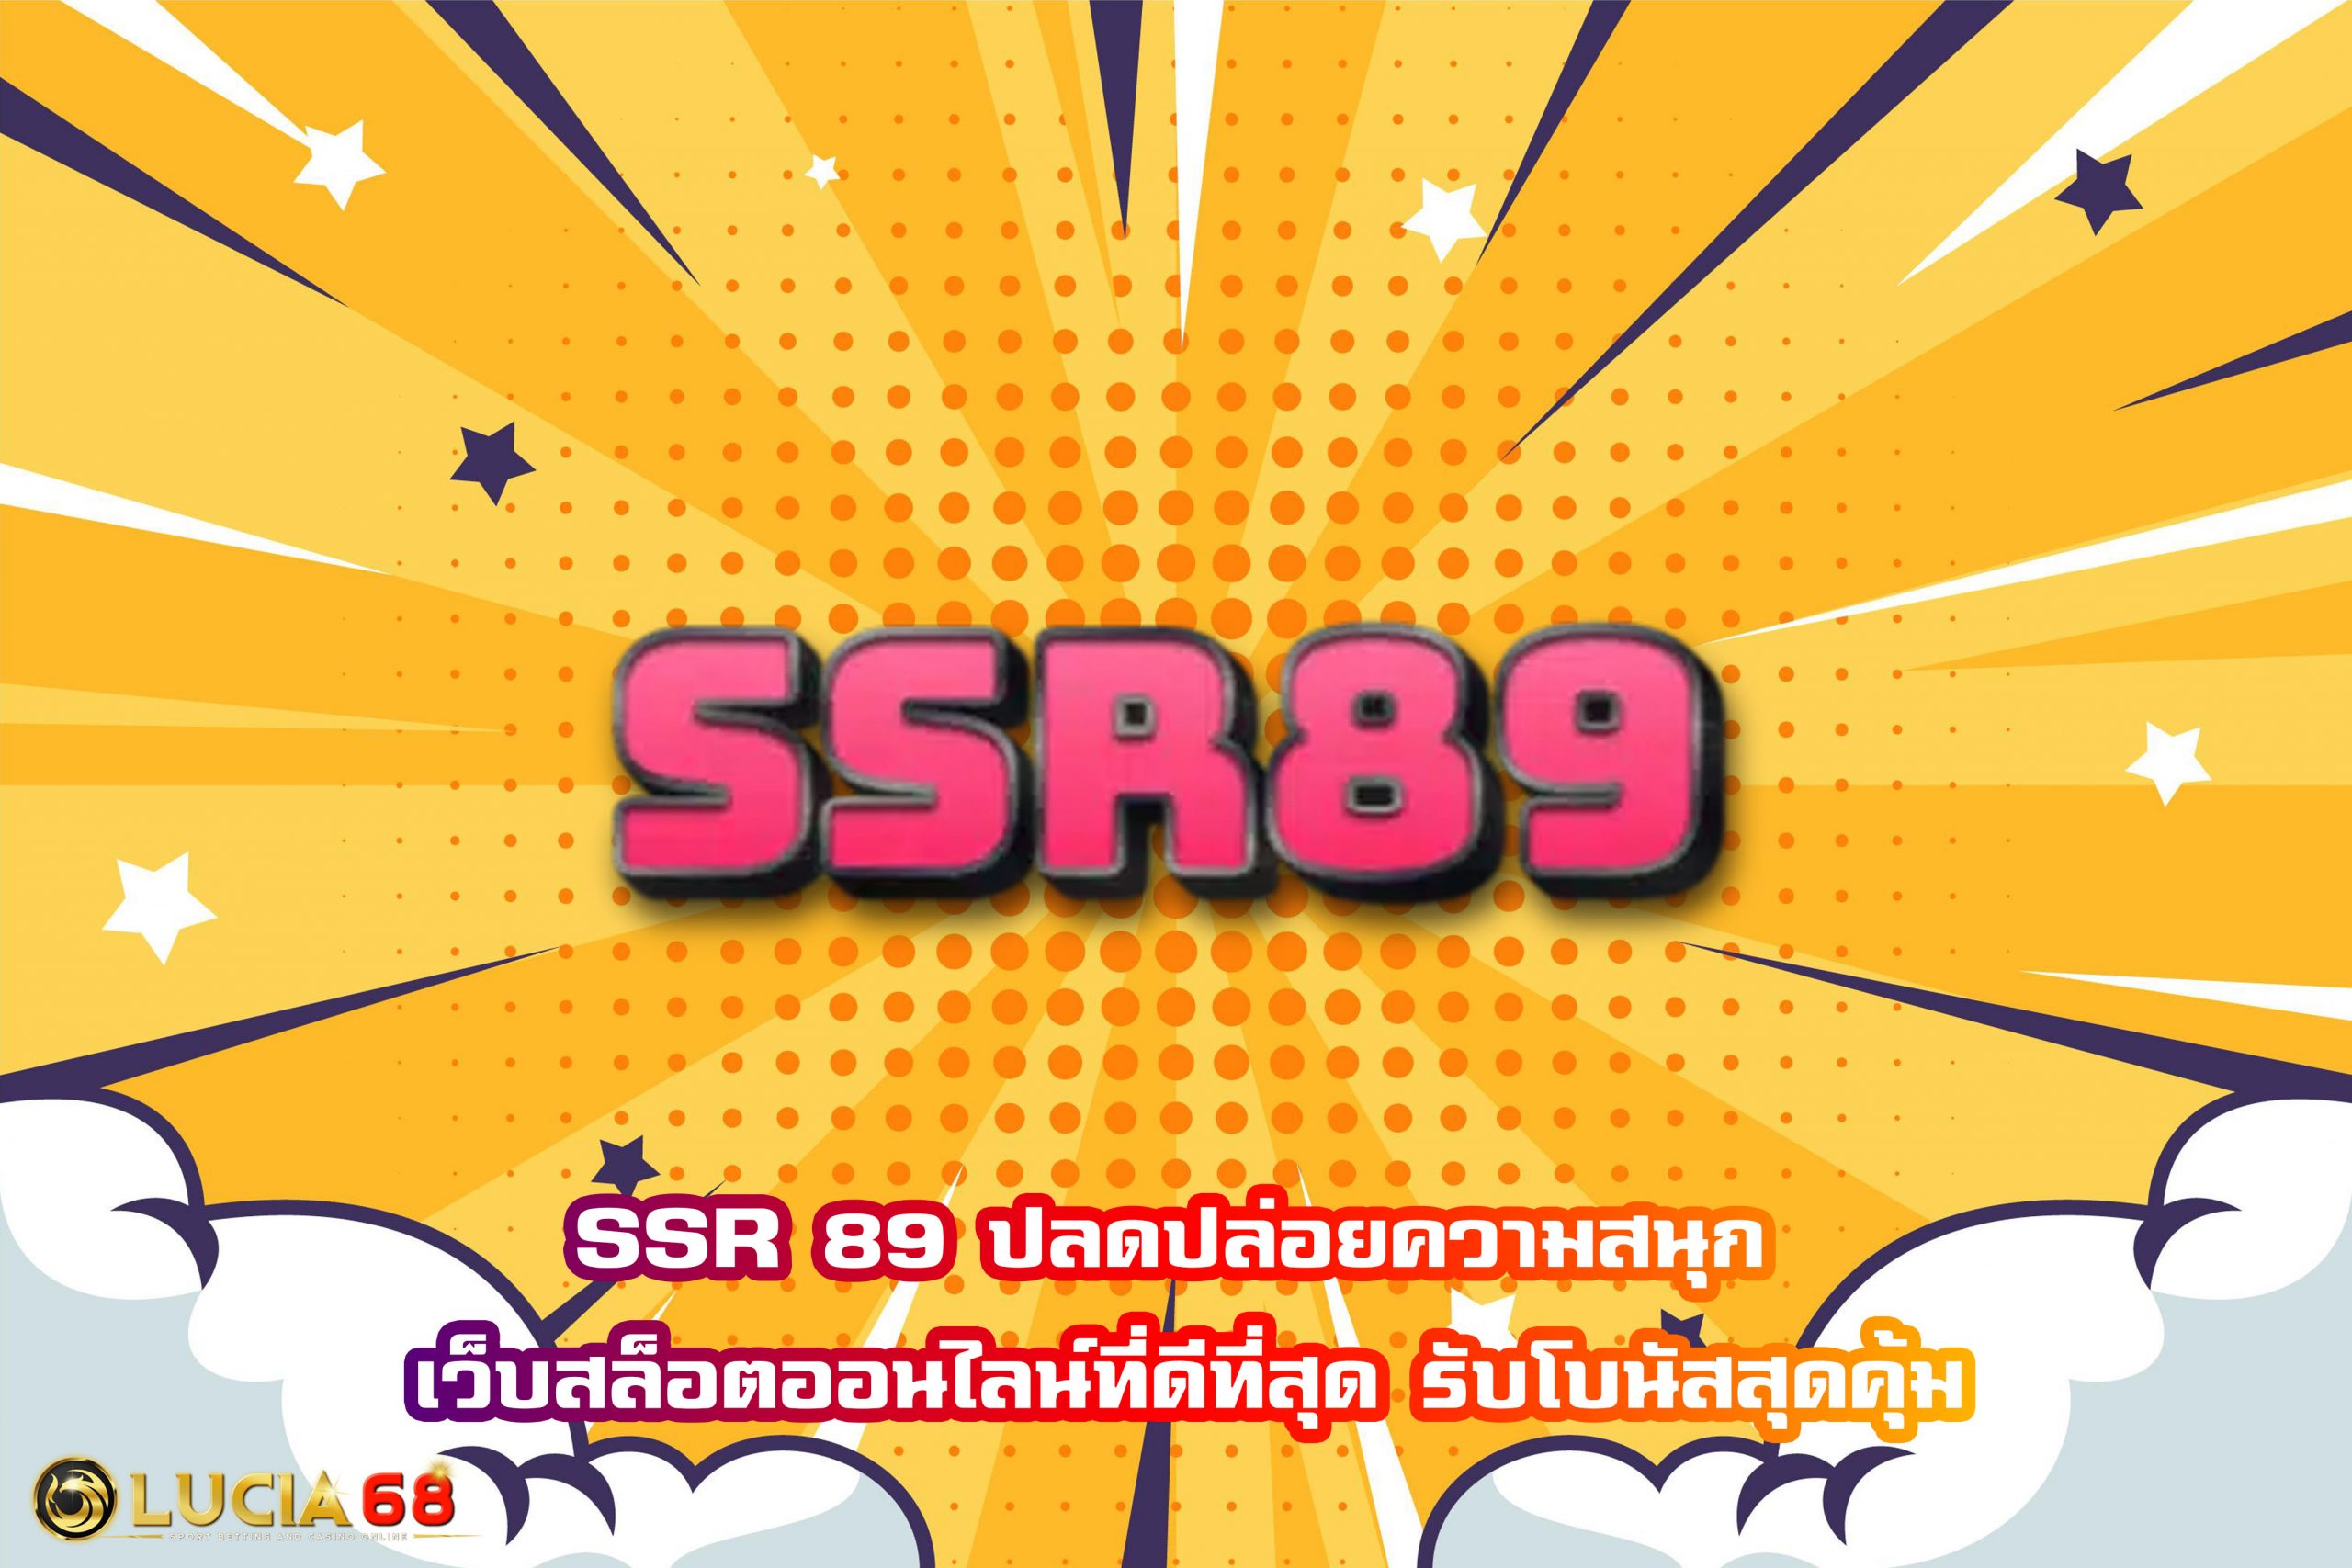 SSR 89 ปลดปล่อยความสนุก เว็บสล็อตออนไลน์ที่ดีที่สุด รับโบนัสสุดคุ้ม